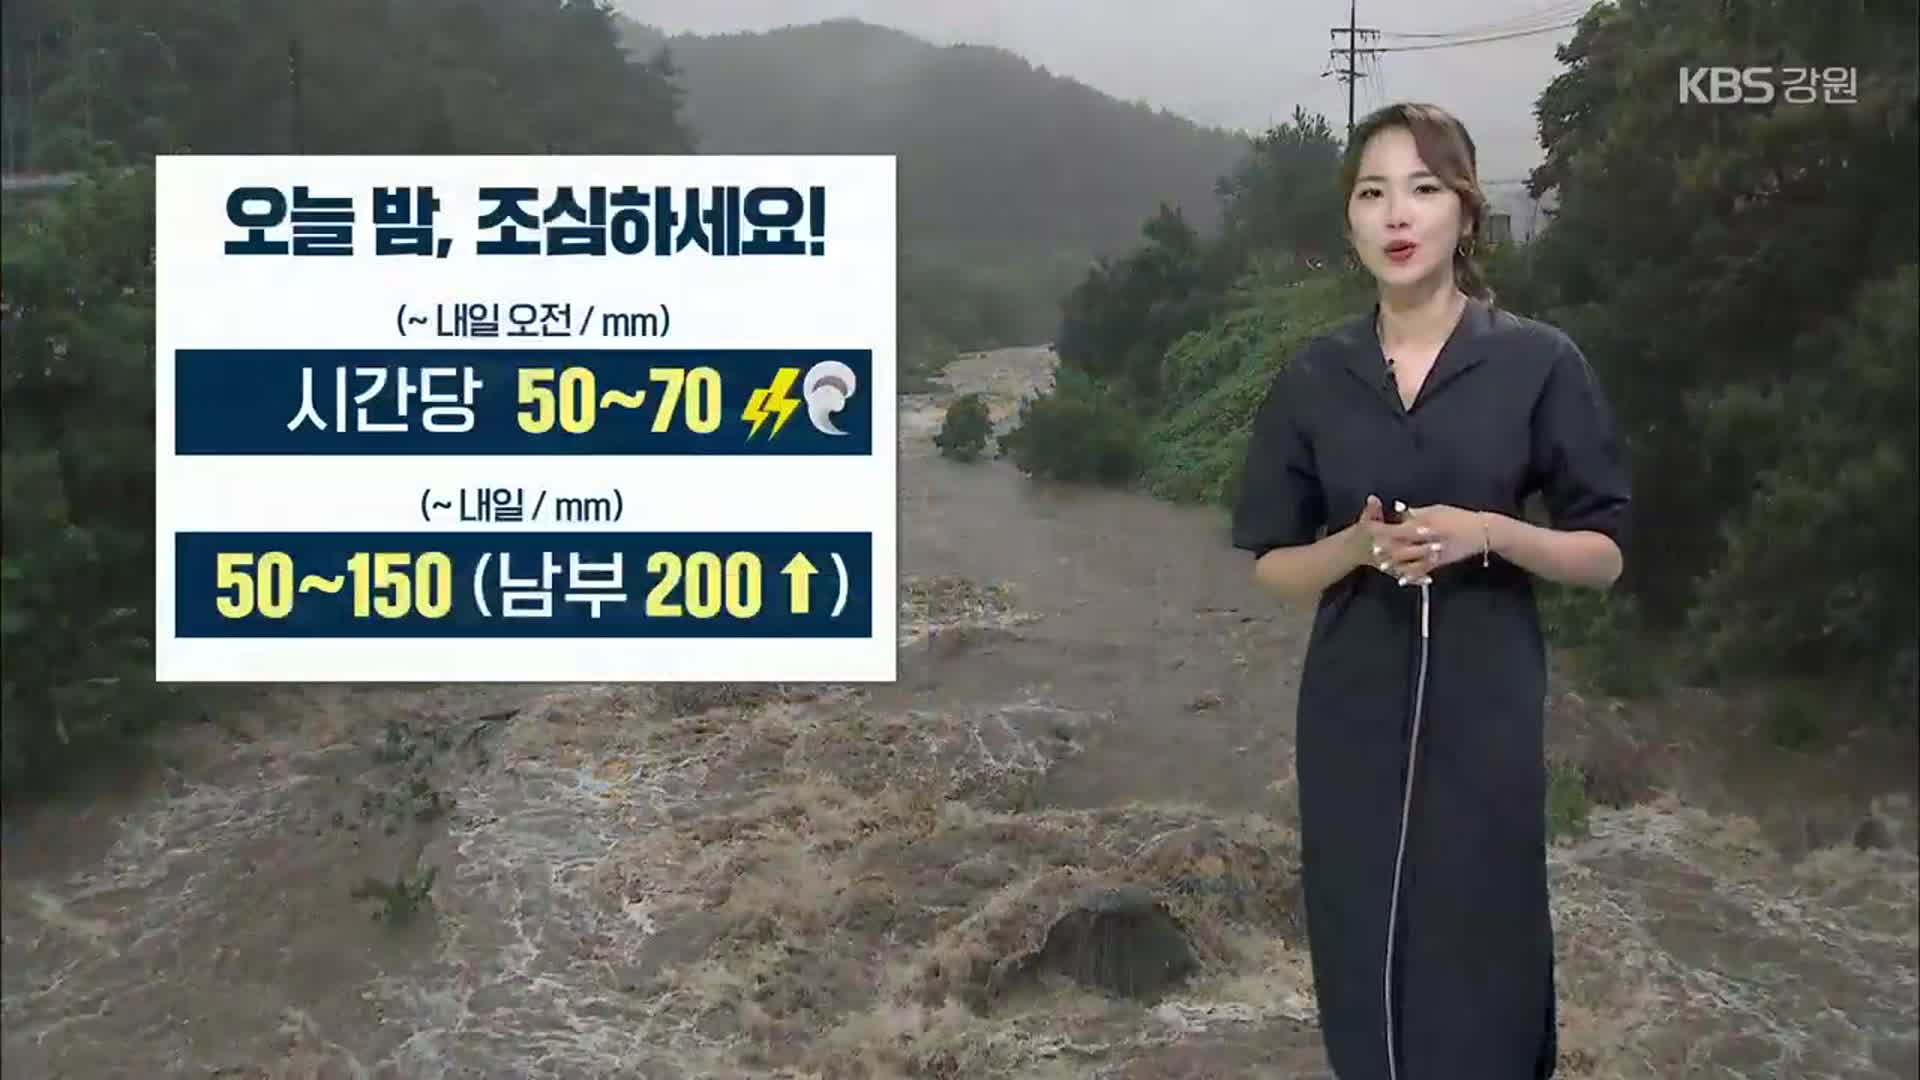 [날씨] 강원 오늘 밤~내일 오전 ‘매우 강한 비’…내일까지 최대 200mm ↑ 